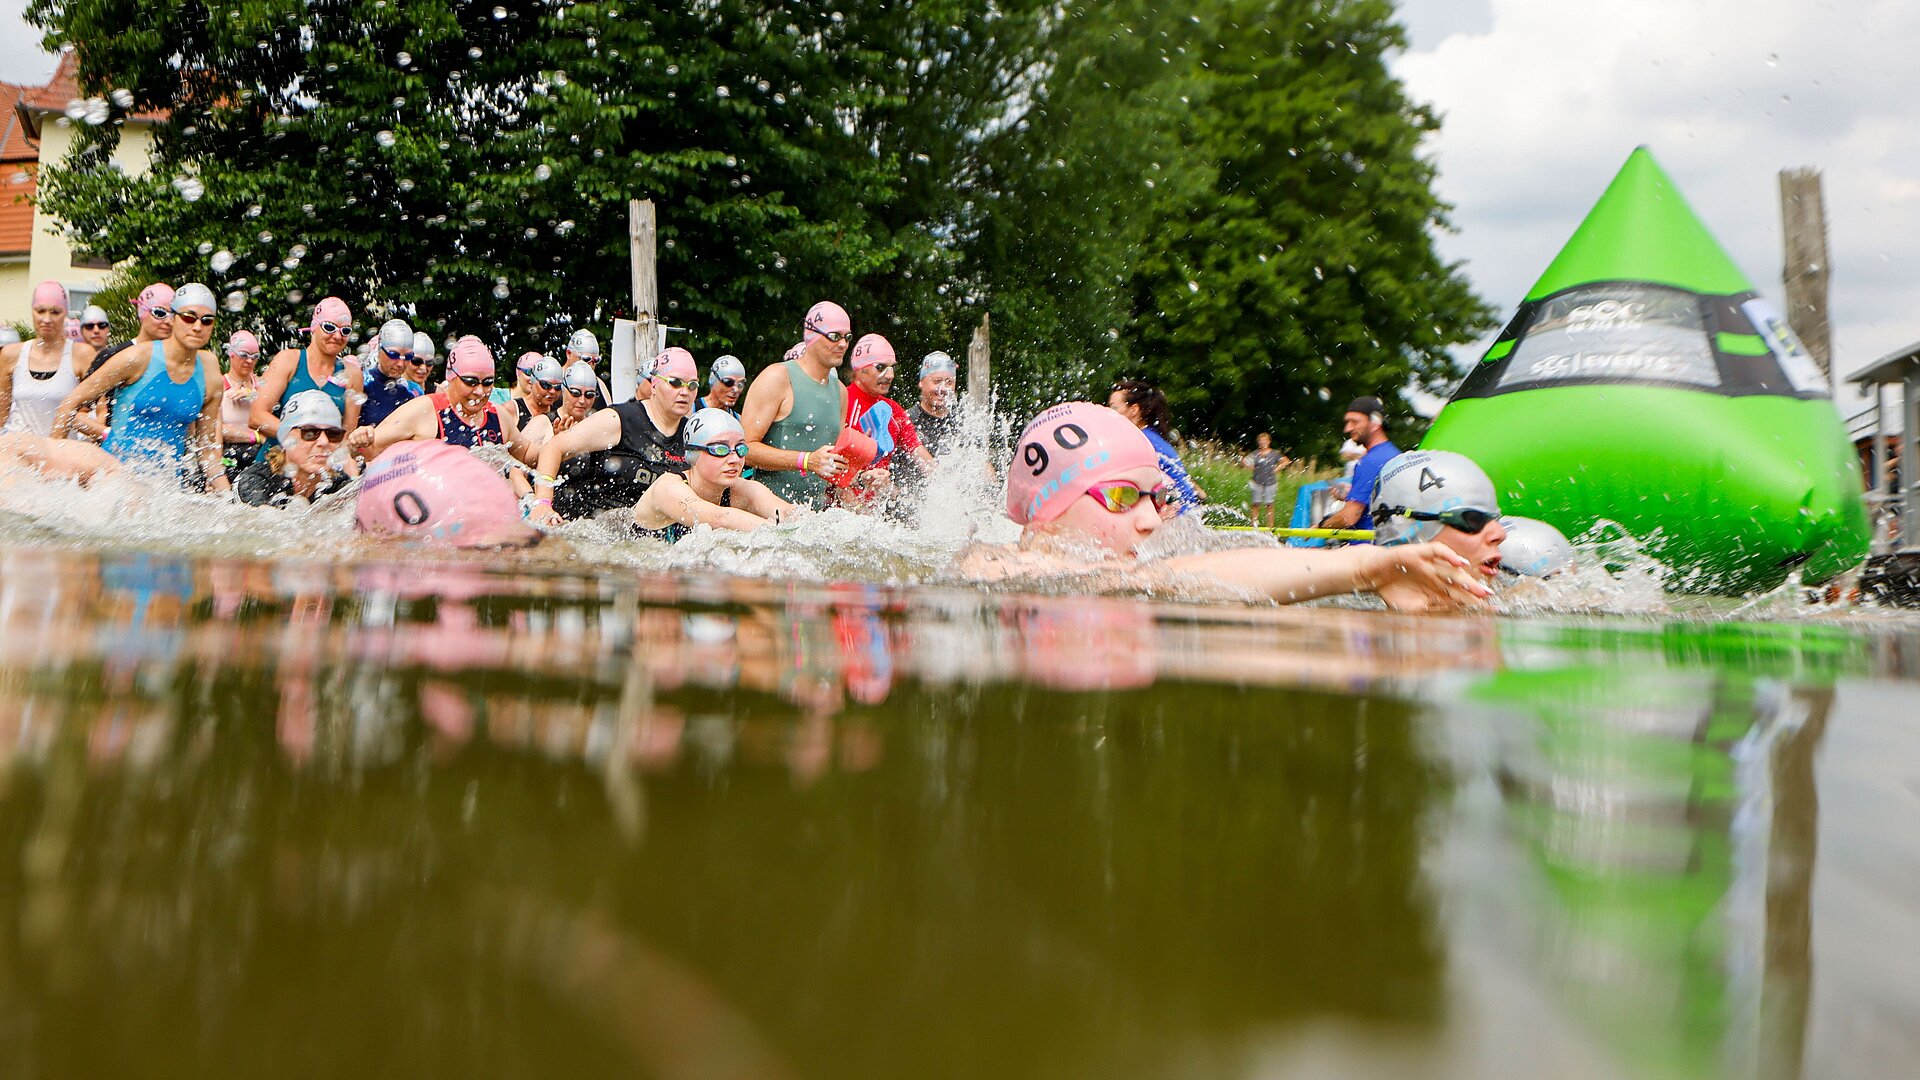 SwimRun: Teilnehmerfeld steigt ins Wasser und passiert eine grüne Boje © SCC EVENTS / Jean-Marc Wiesner 